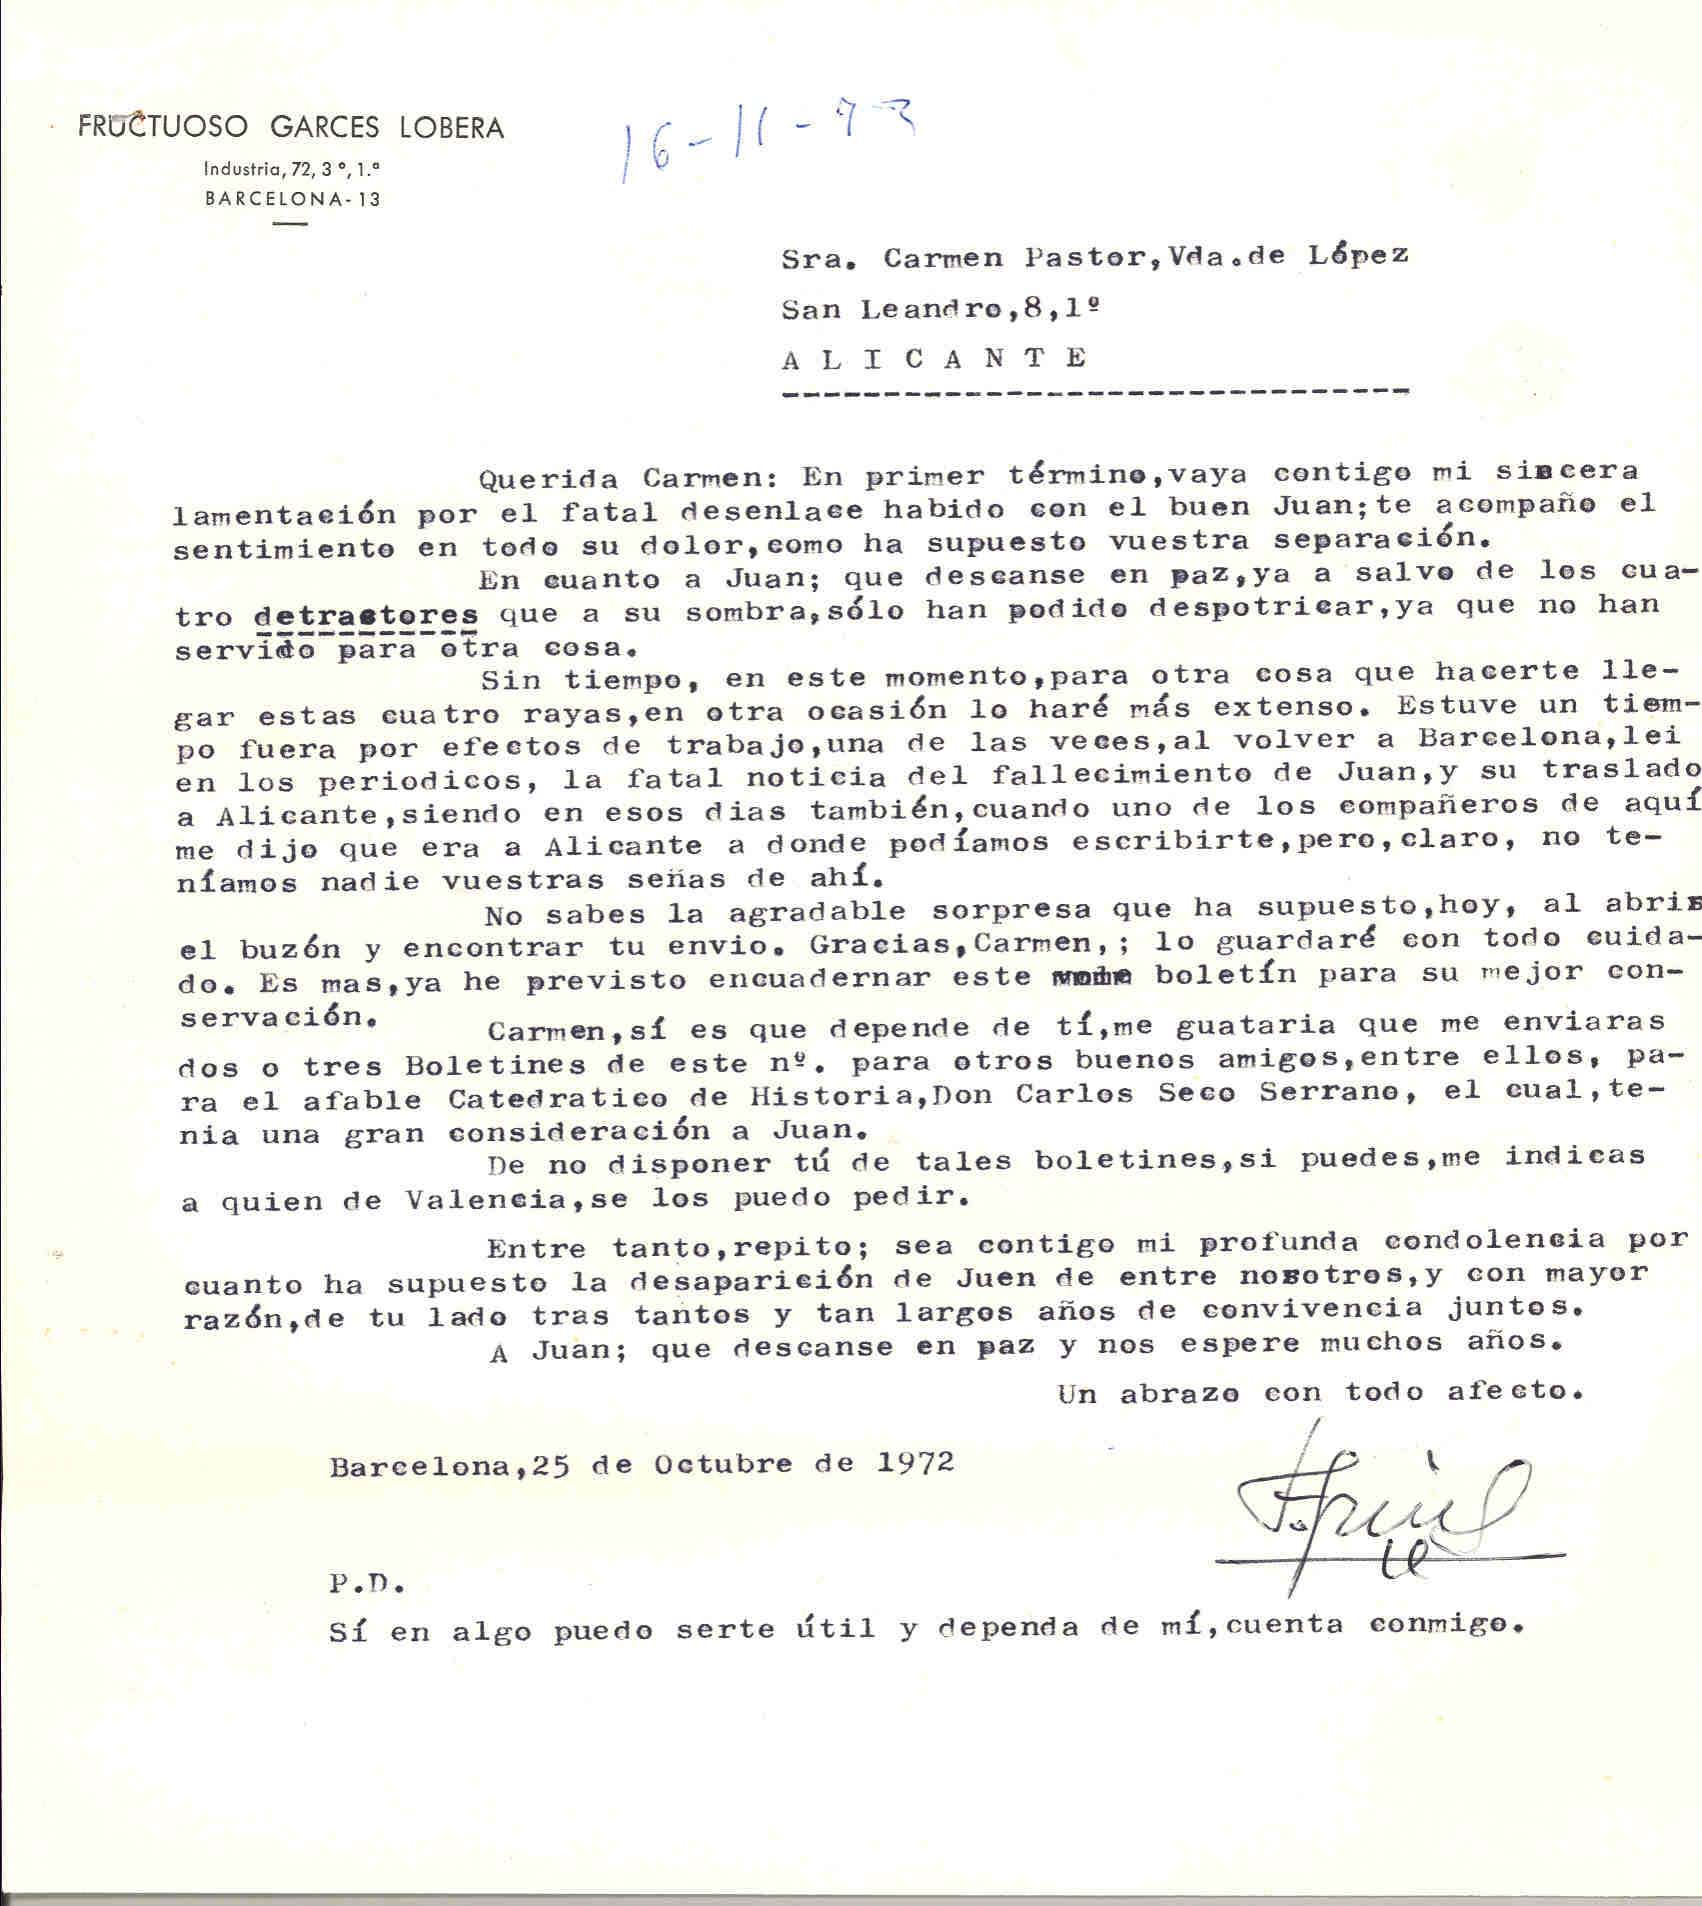 Carta de Fructuoso Garcés Lobera expresando su pésame por la muerte de Juan López y pidiéndole más boletines en memoria de Juan López para su difusión.